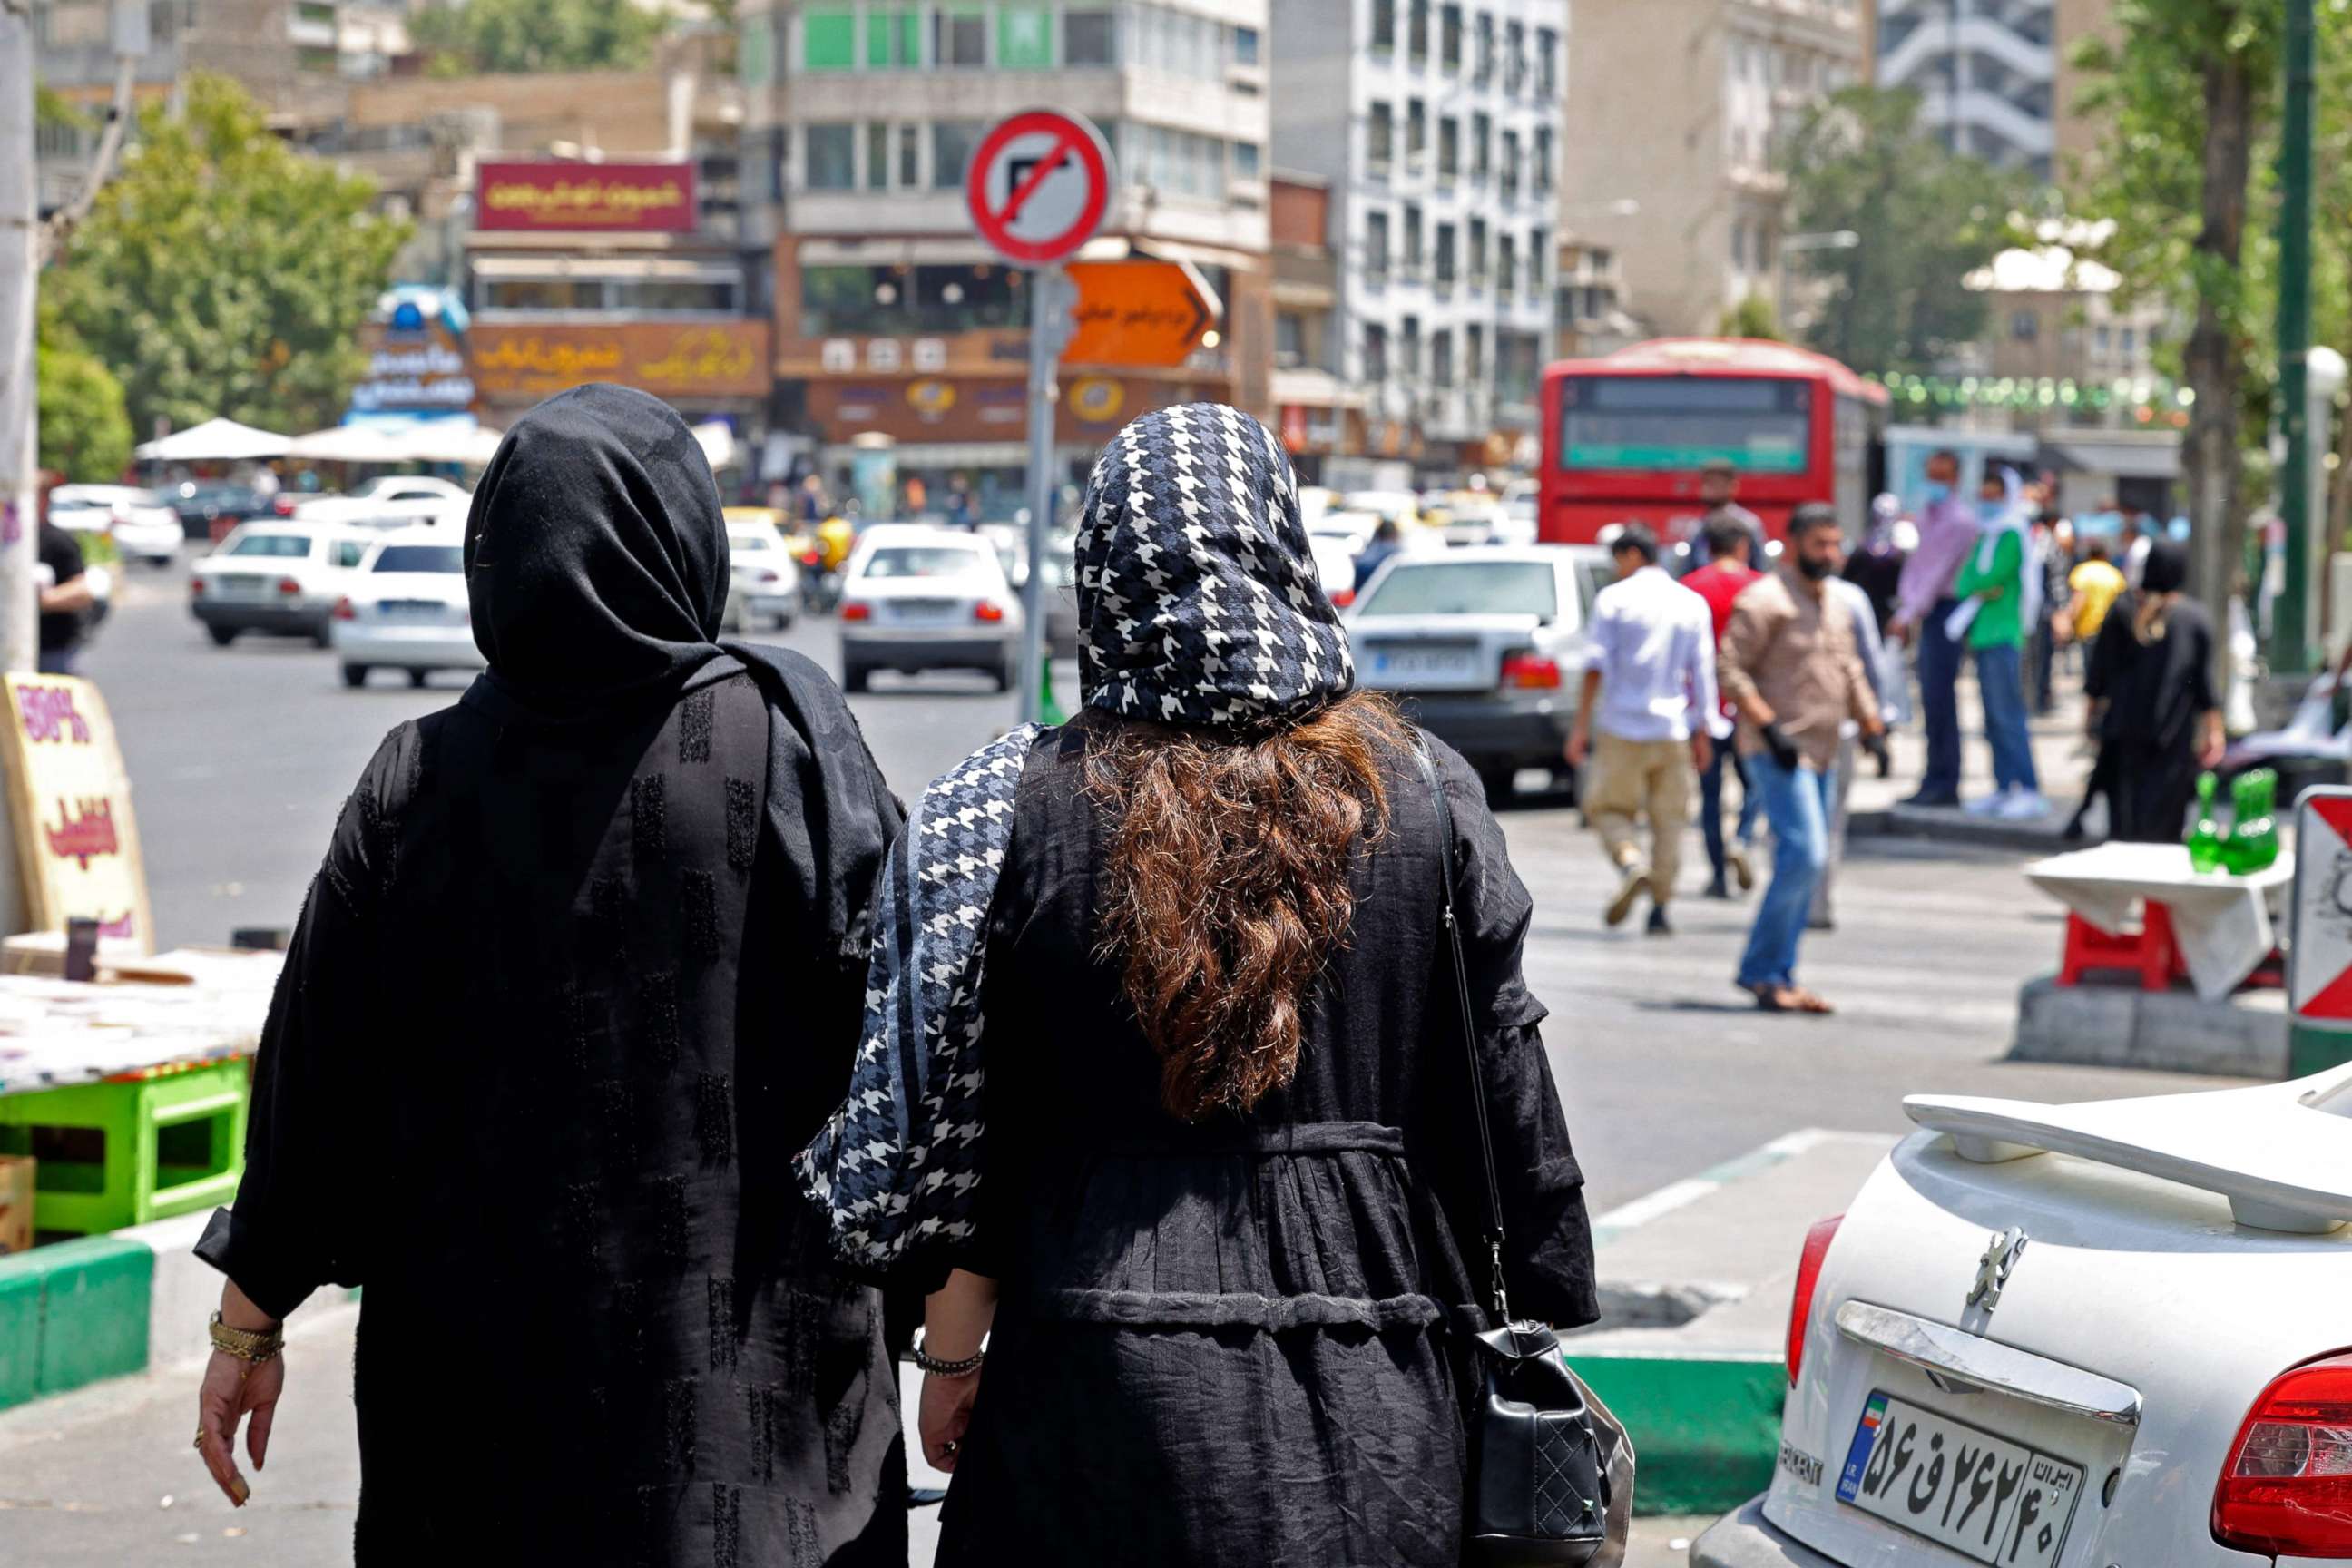 PHOTO: Women wearing headscarves walk in the streets of Tehran near, Tajrish Square, in Iran, on July 12, 2022.